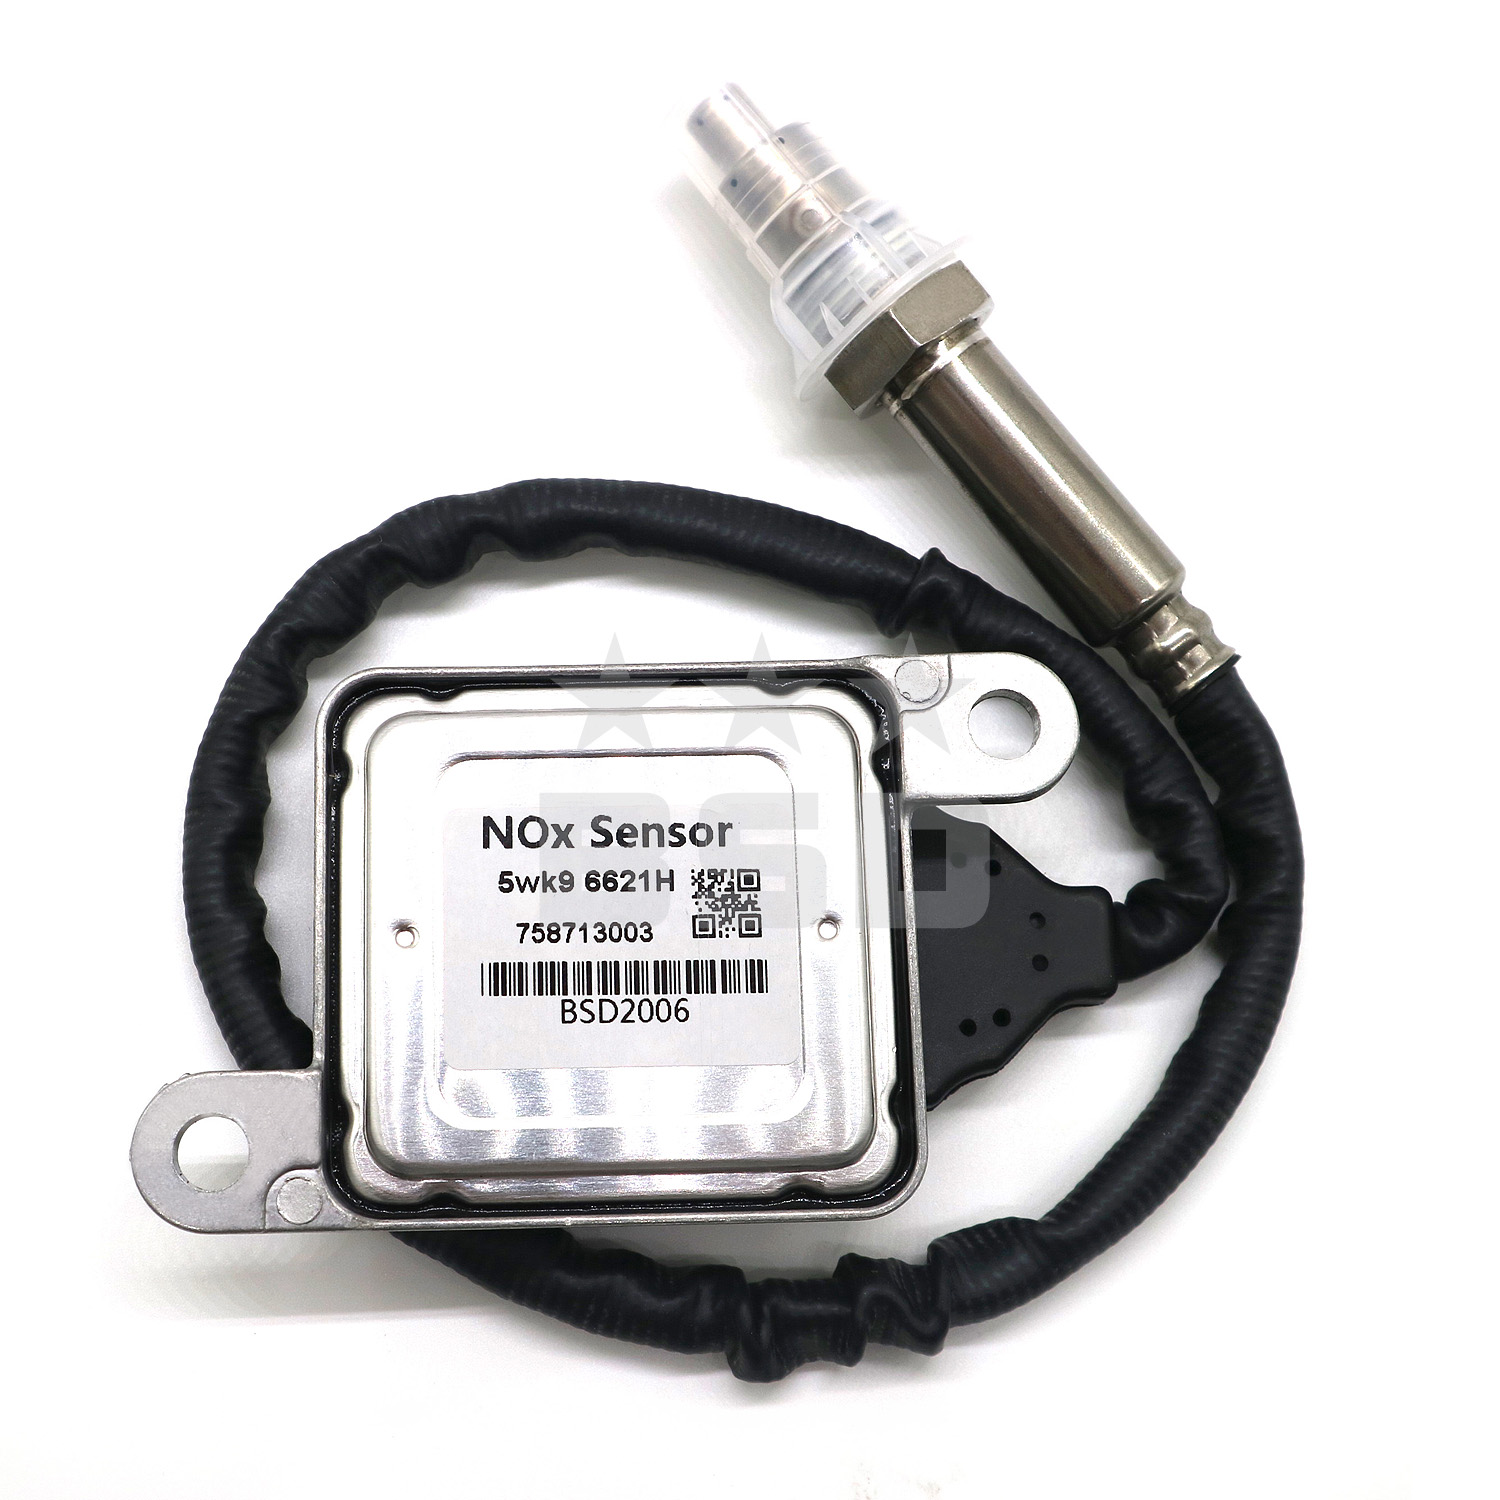 05149216AB Nitrogen Oxide NOX Sensor 5wk9 6651A 12V 795mm